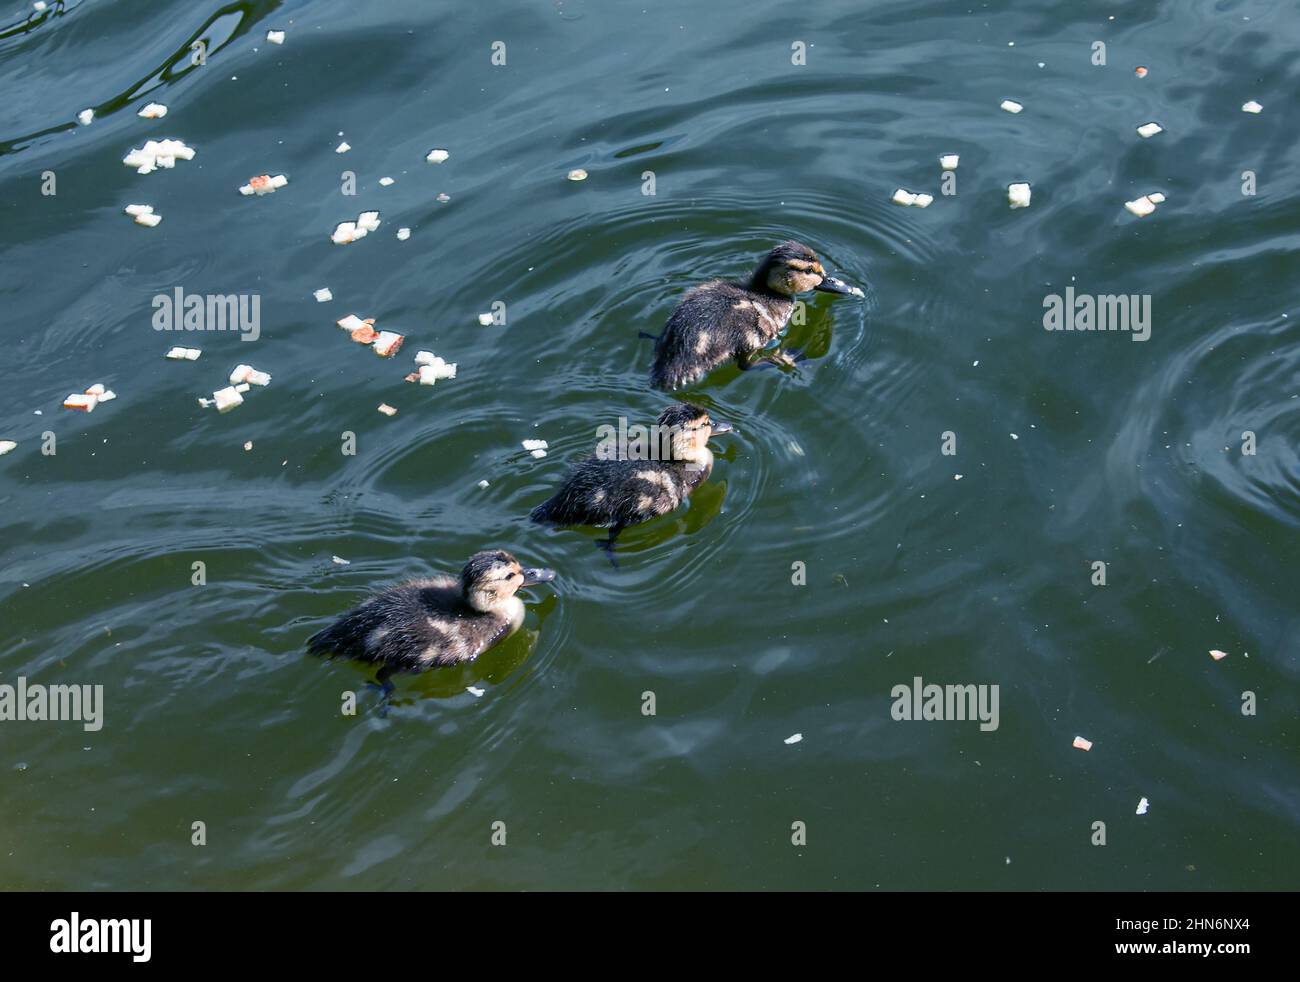 Eine Entenfamilie, eine Ente und ihre kleinen Enten schwimmen im Wasser. Die Ente kümmert sich um ihre neugeborenen Enten. Entlein sind alle zusammen Stockfoto